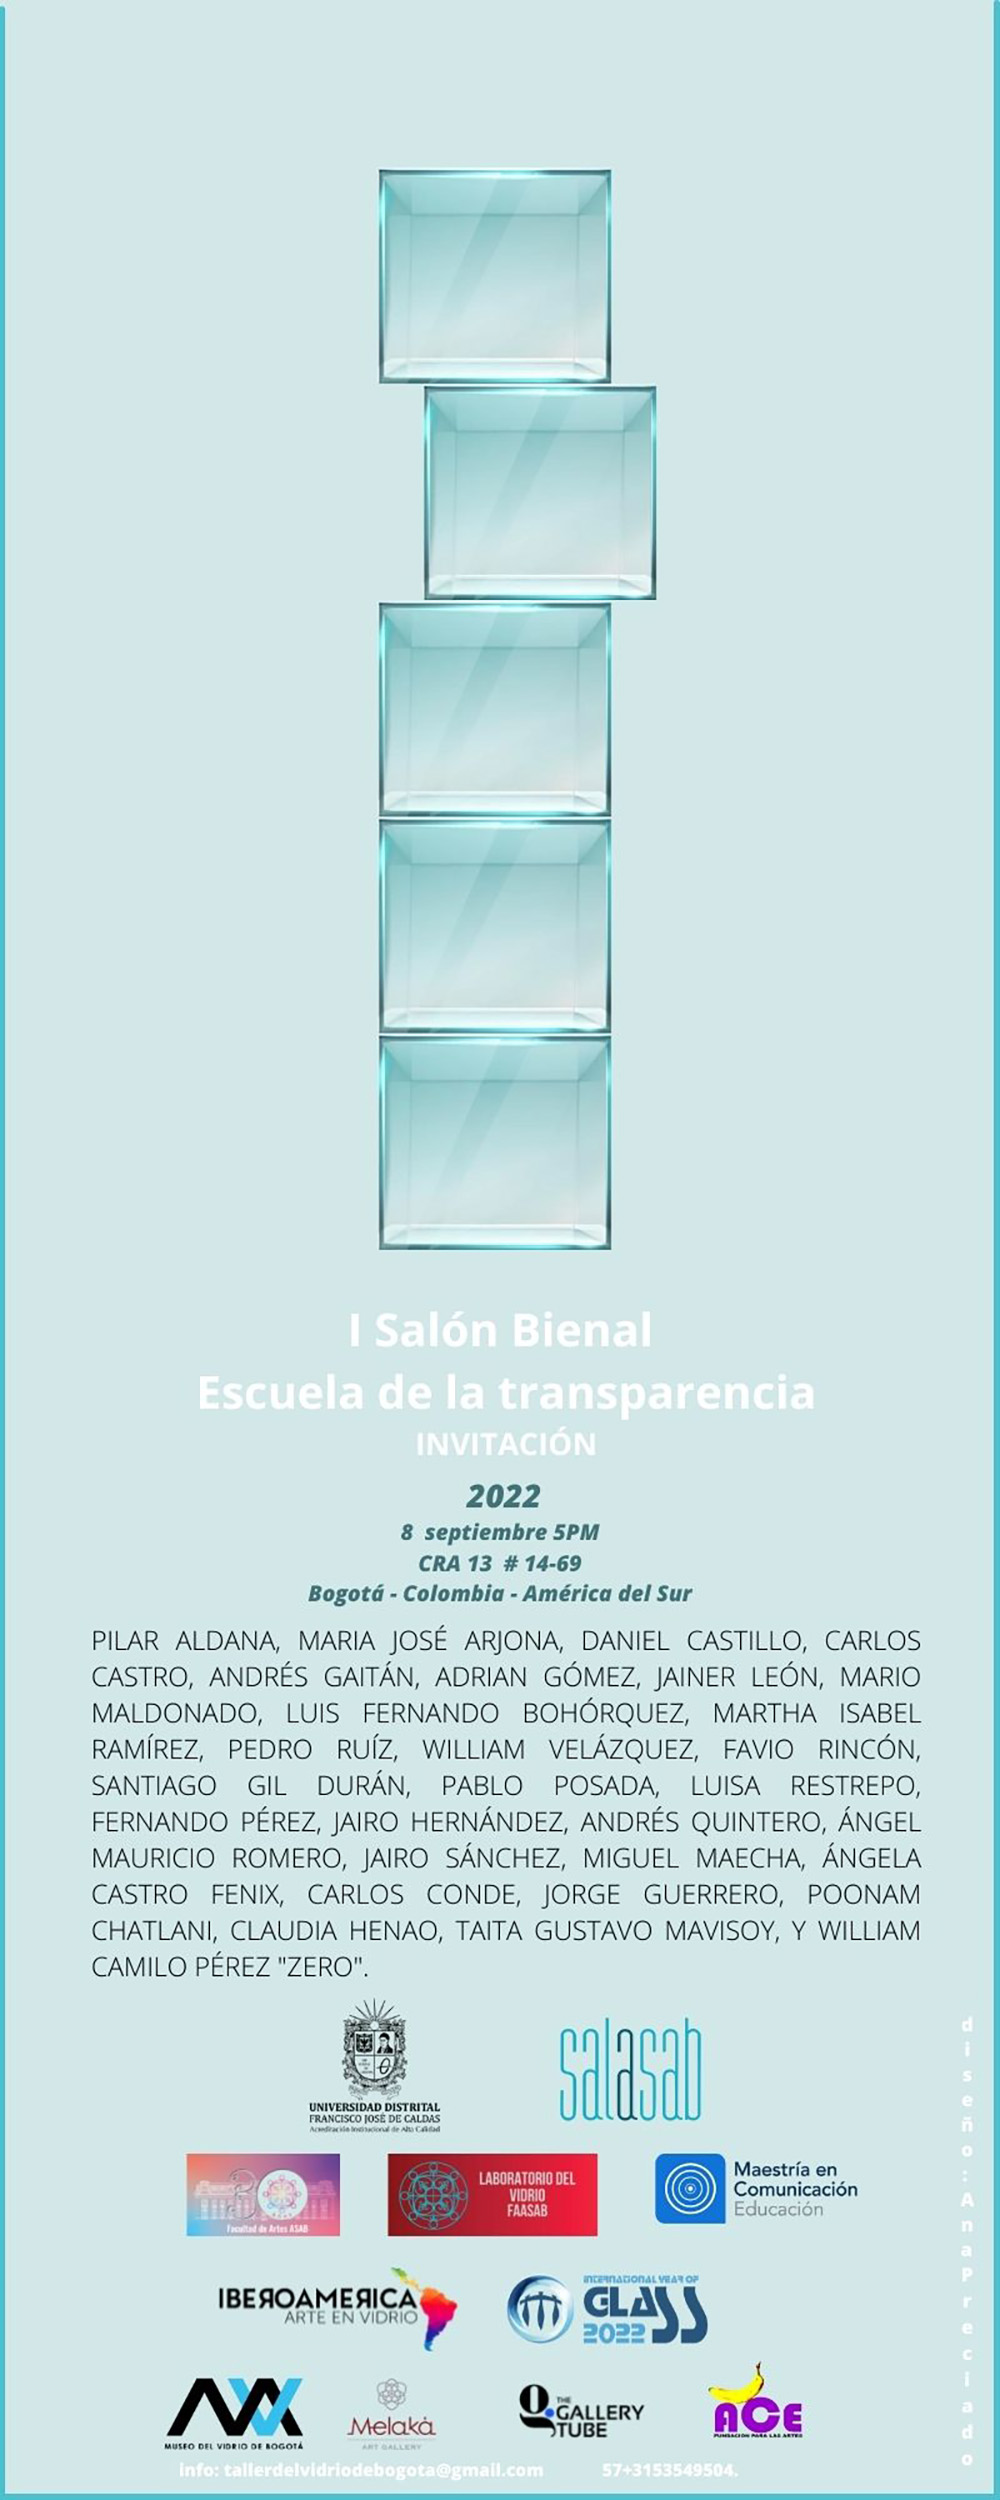 I Salón Bienal Escuela de la transparencia FAASAB